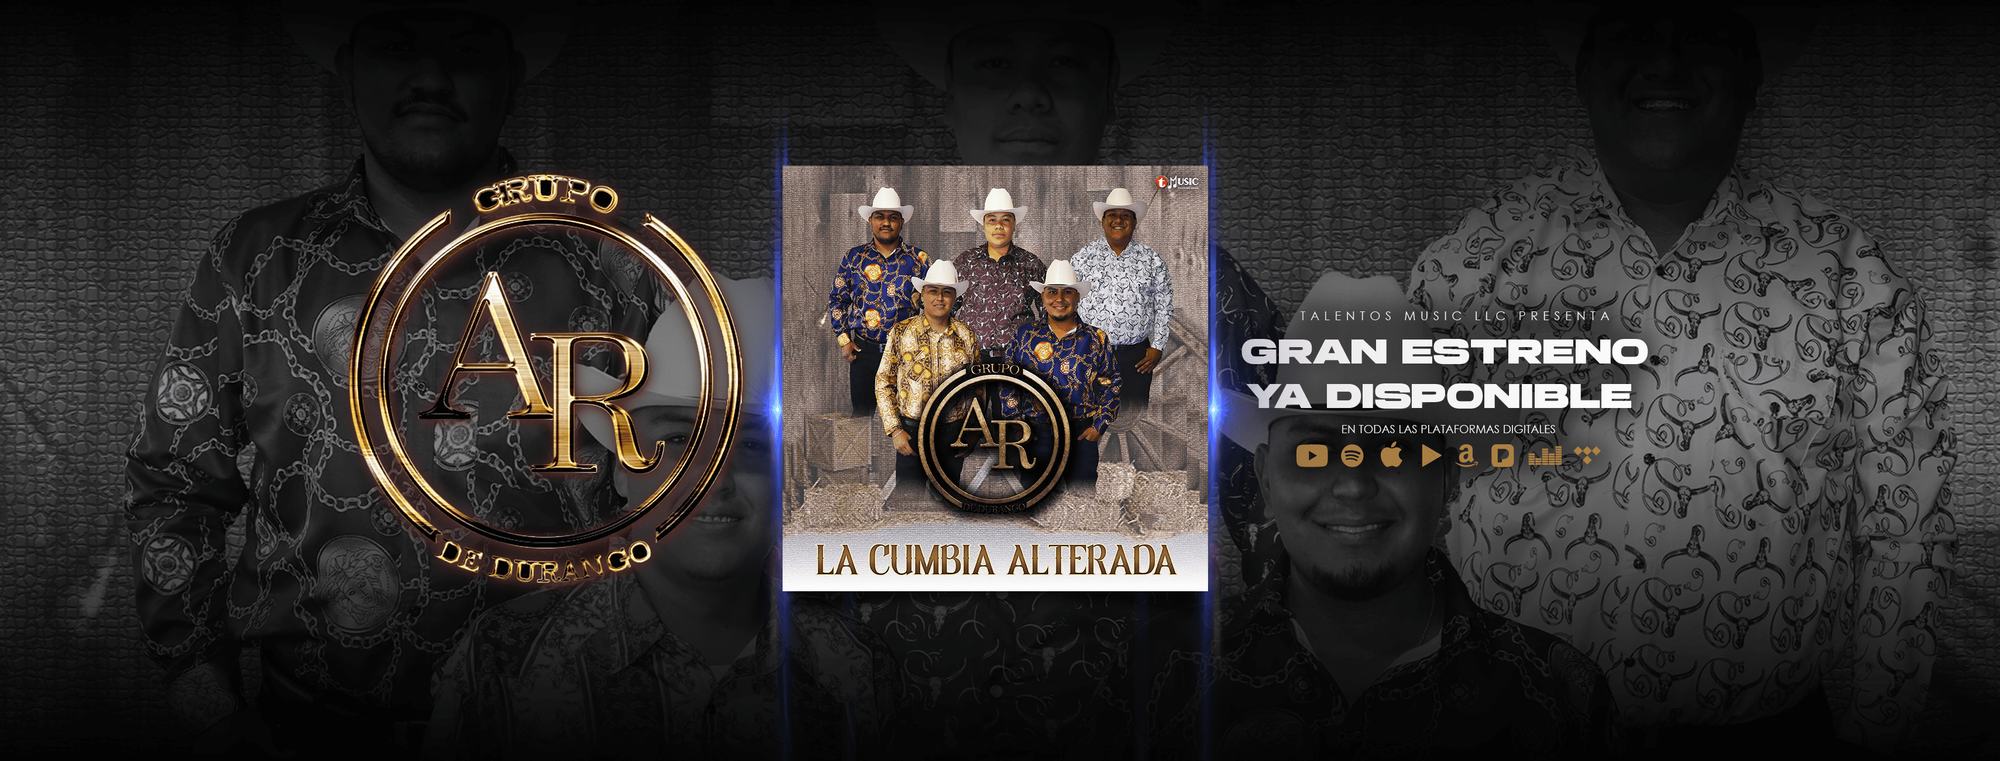 LANZAMIENTO OFICIAL - Descarga aquí el nuevo Álbum de Grupo AR de Durango - La Cumbia Alterada - Disponible en todas las Plataformas Digitales